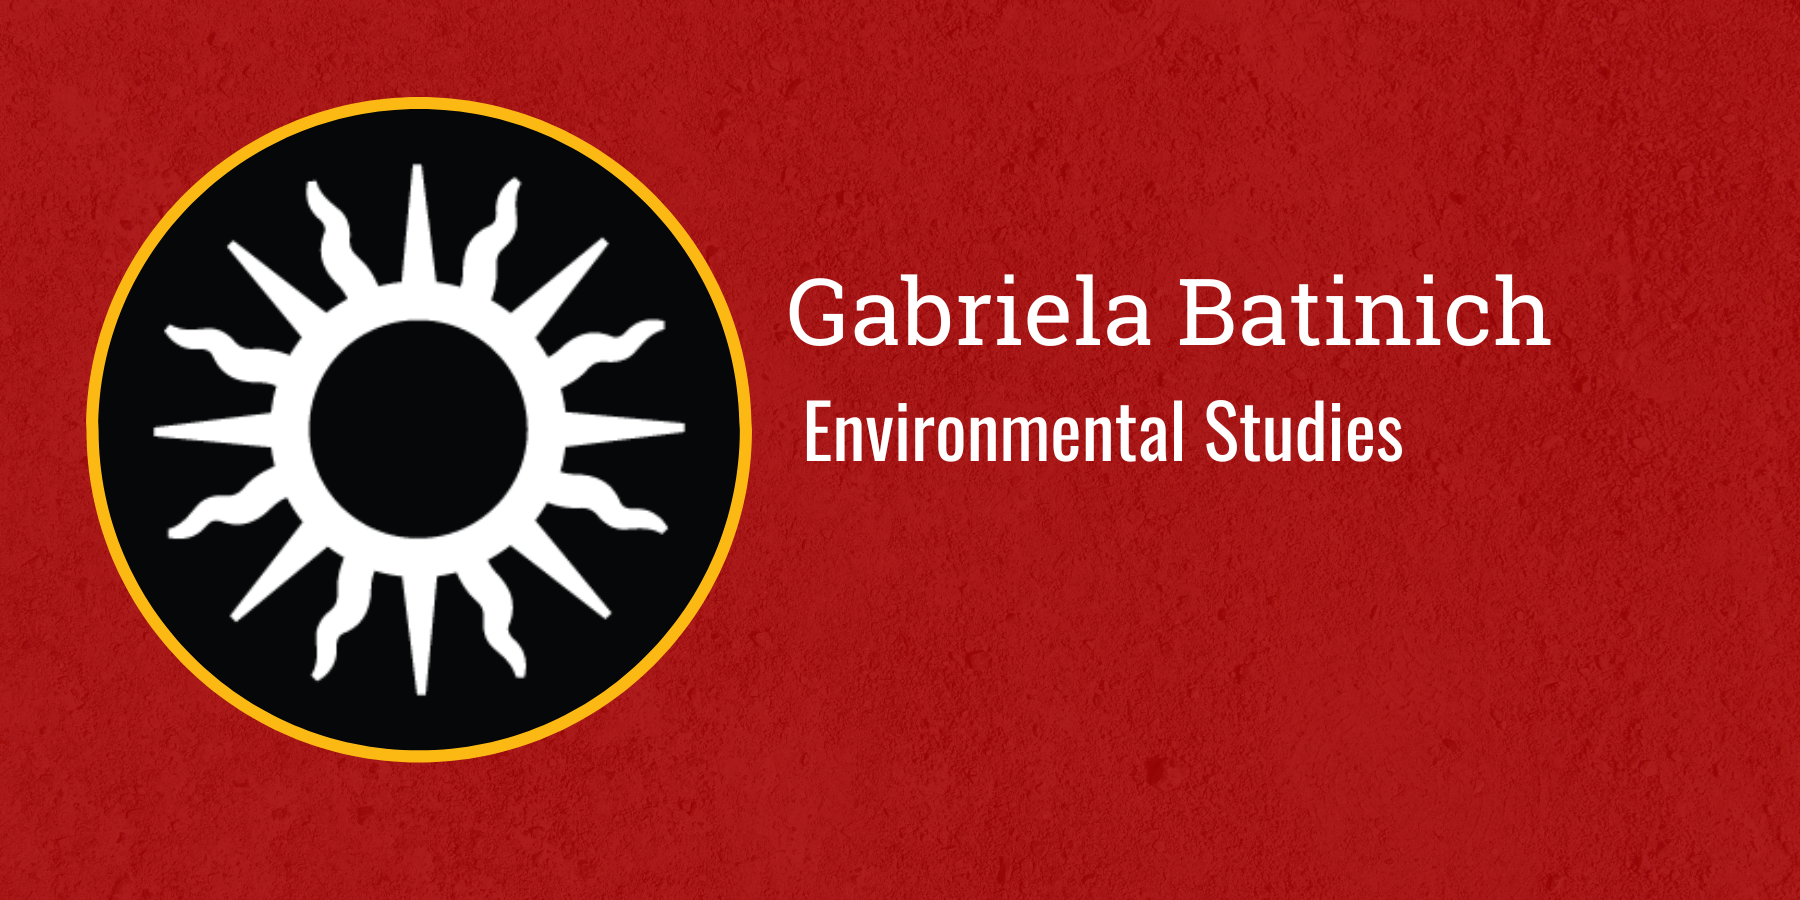 Gabriela Batinich
Environmental Studies
